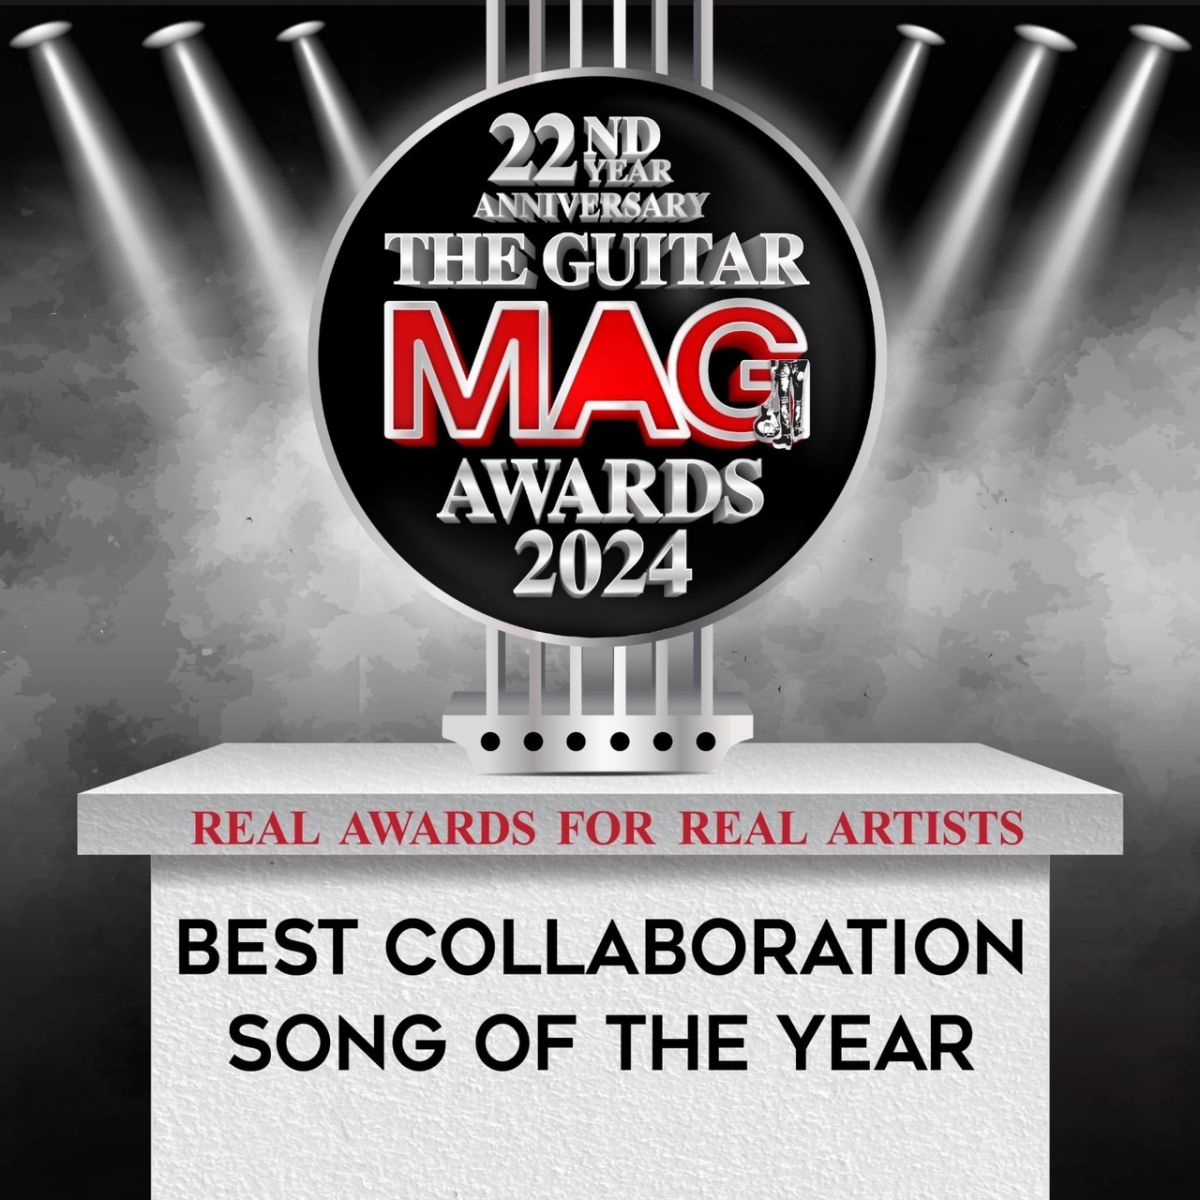 ดนตรี : The Guitar Mag Awards 2024 Real Awards F